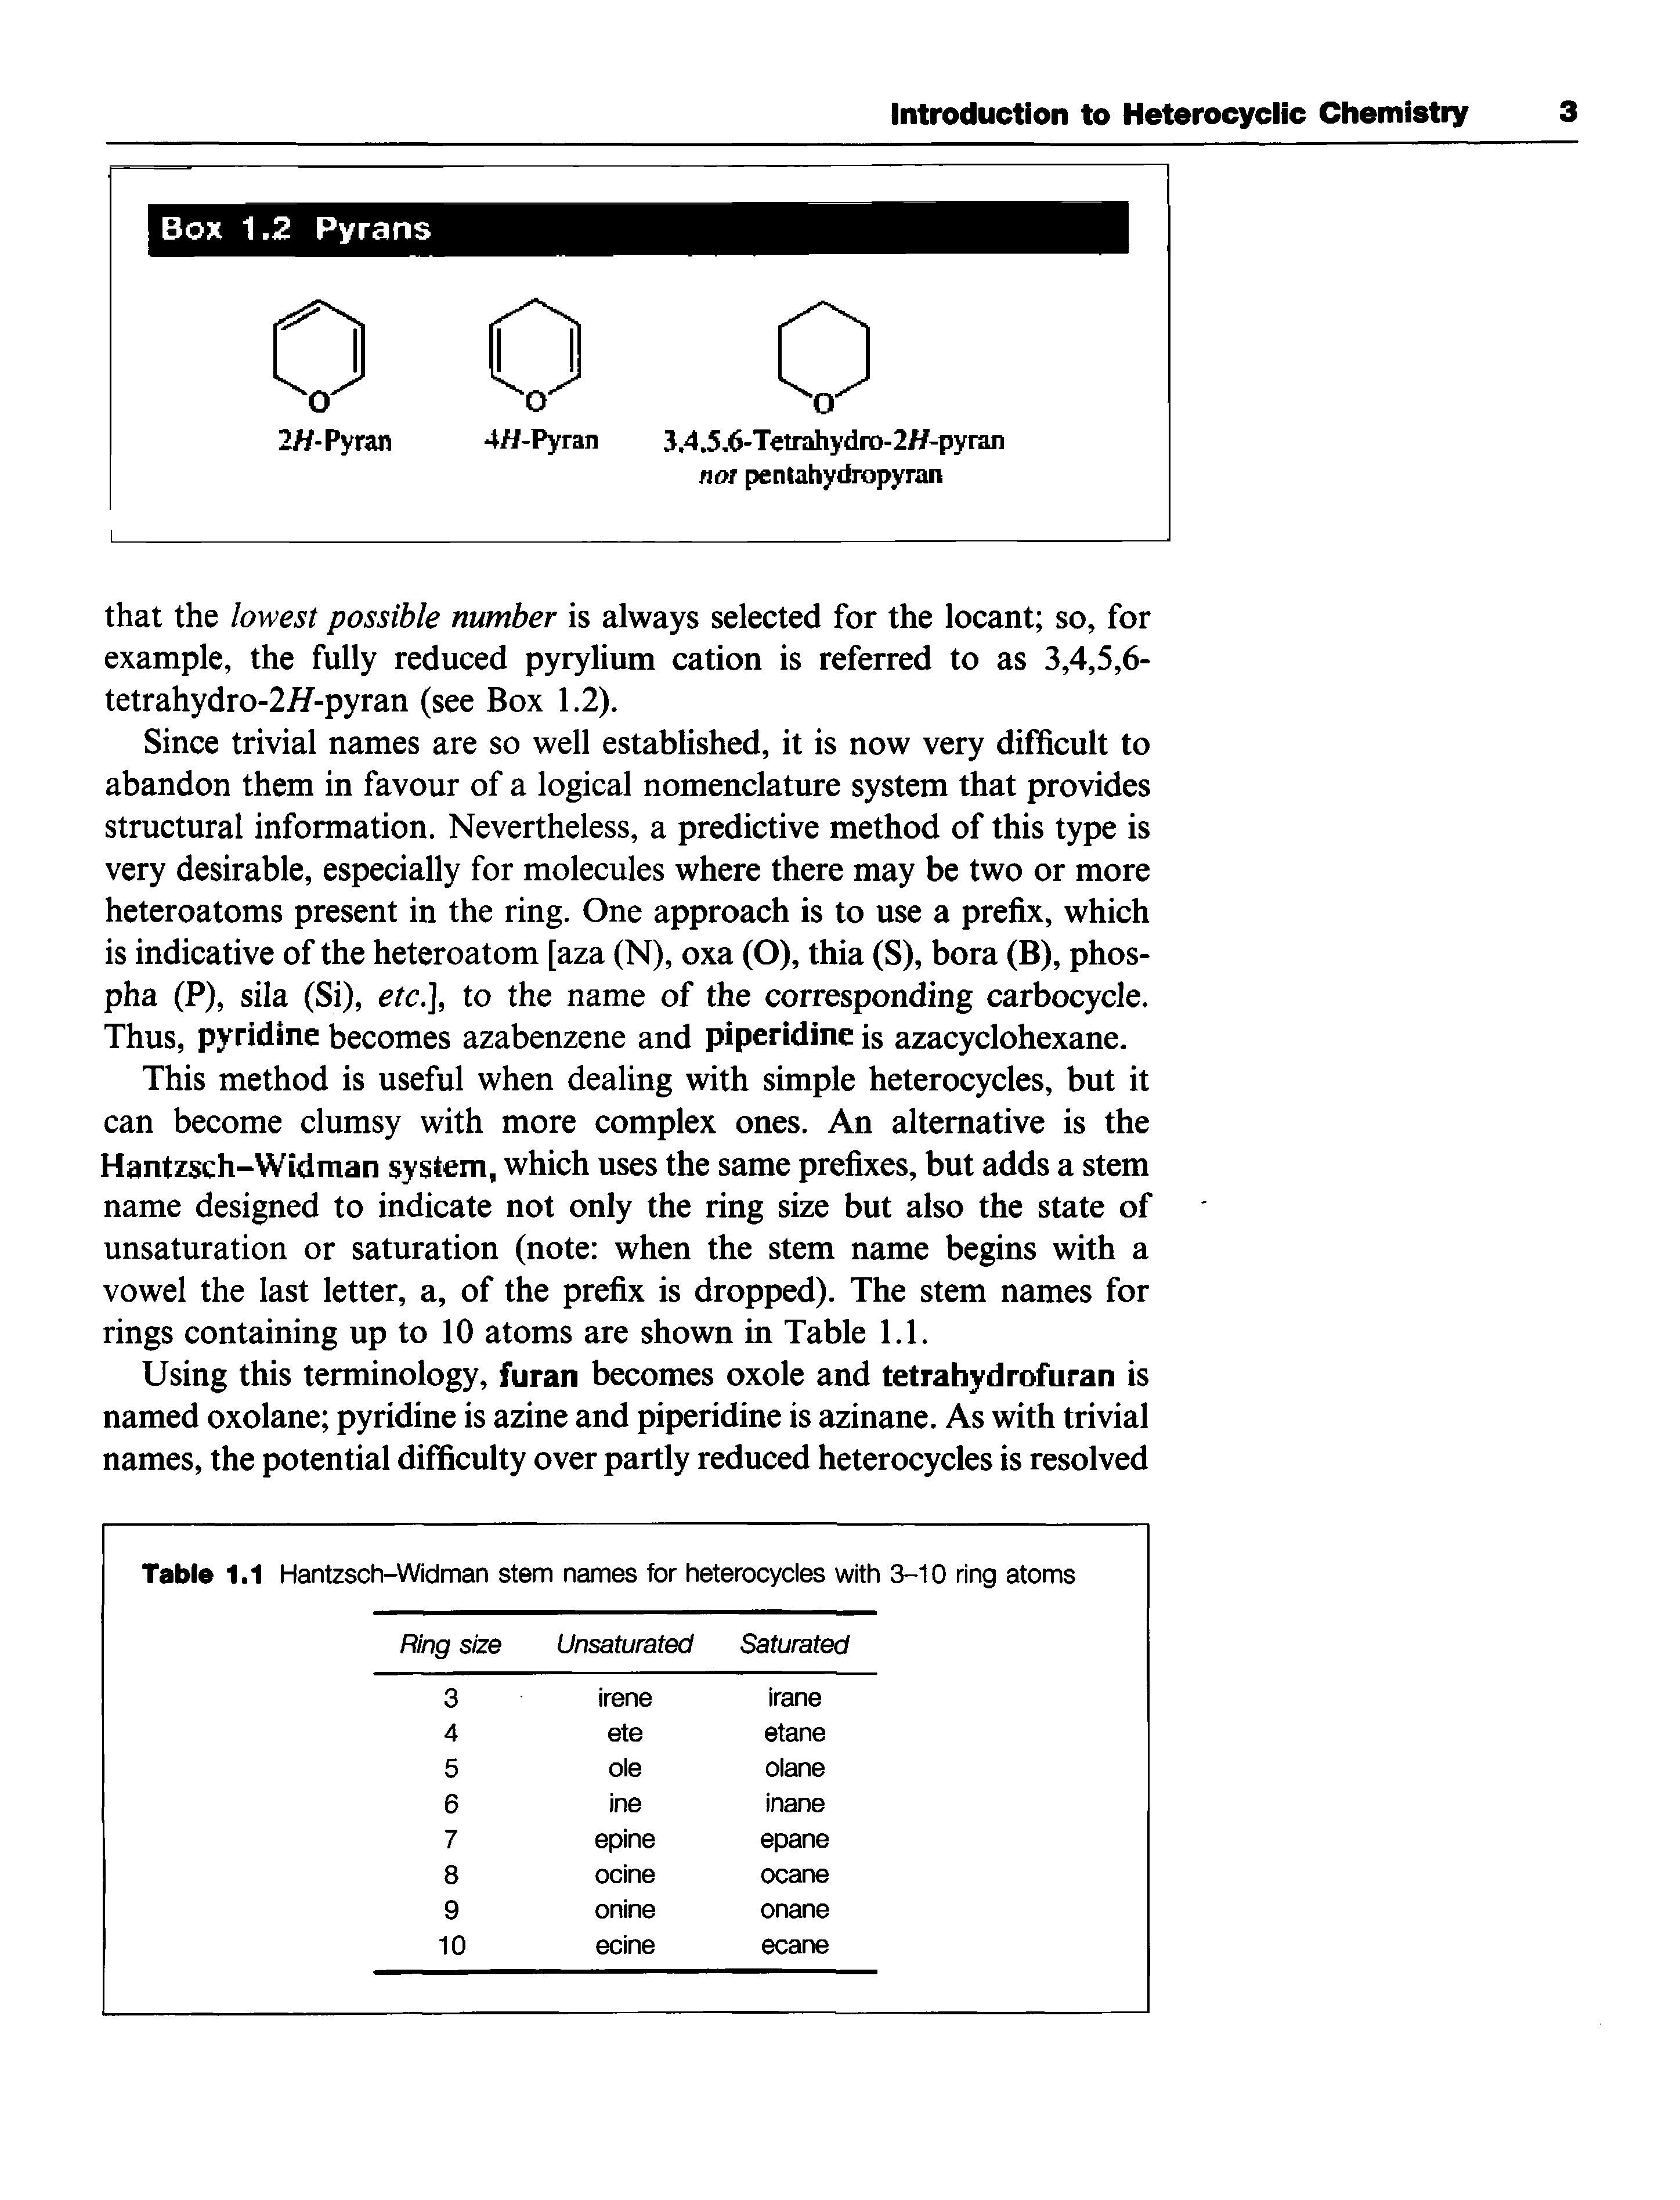 Table 1.1 Hantzsch-Widman stem names for heterocycles with 3-10 ring atoms...